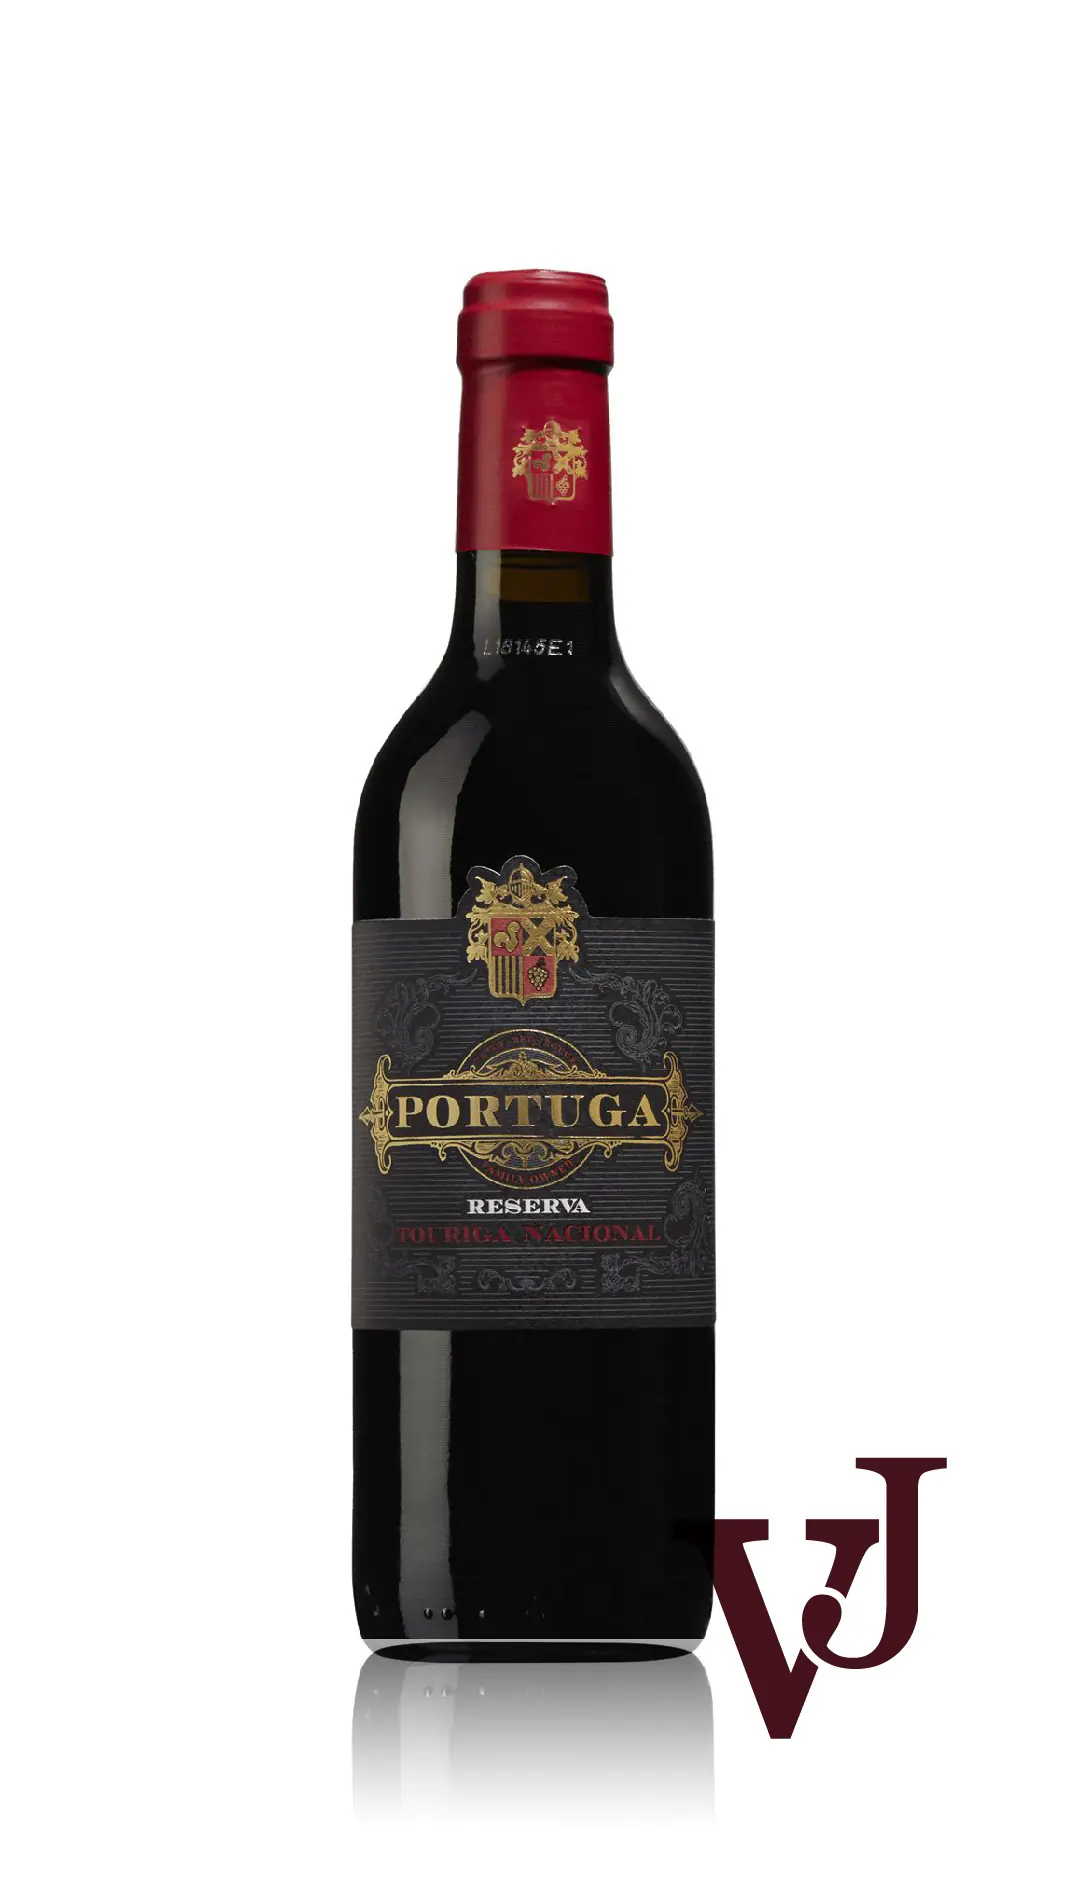 Rött Vin - Portuga Reserva artikel nummer 250702 från producenten Quinta do Conde från området Portugal - Vinjournalen.se